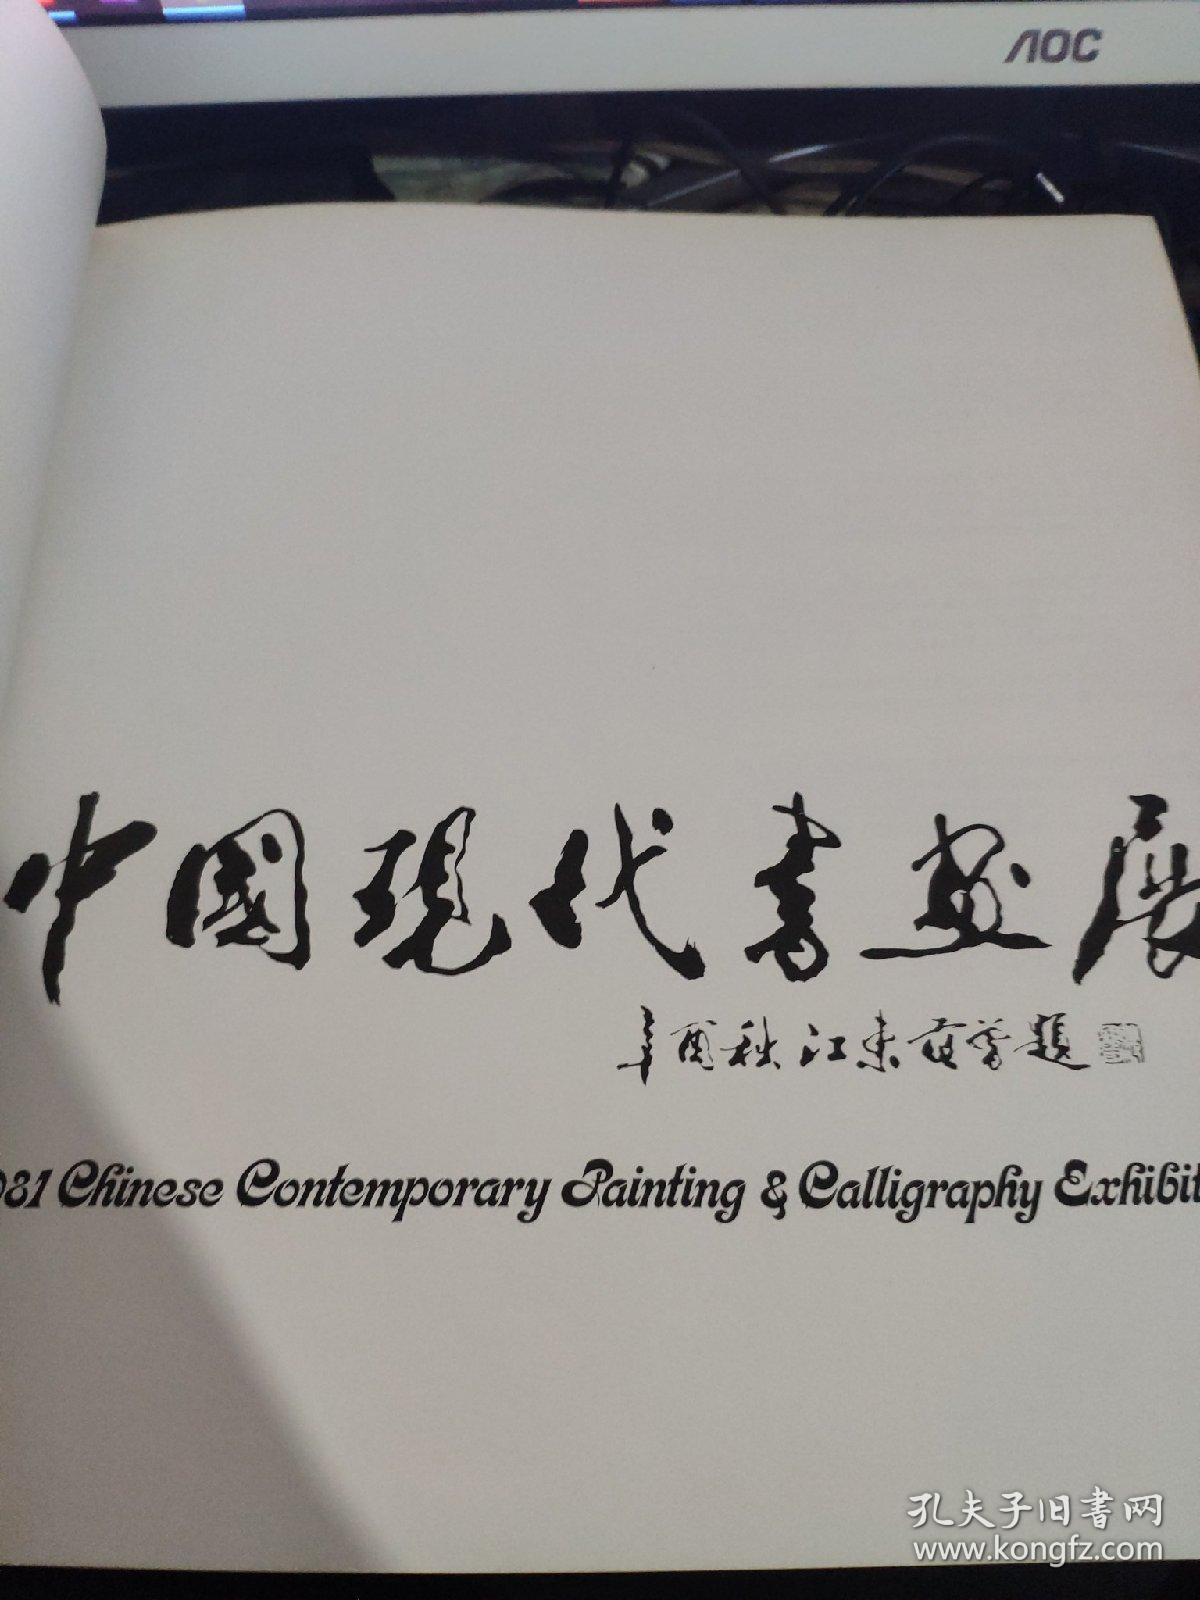 中国现代书画展  有一页有少许污渍见图